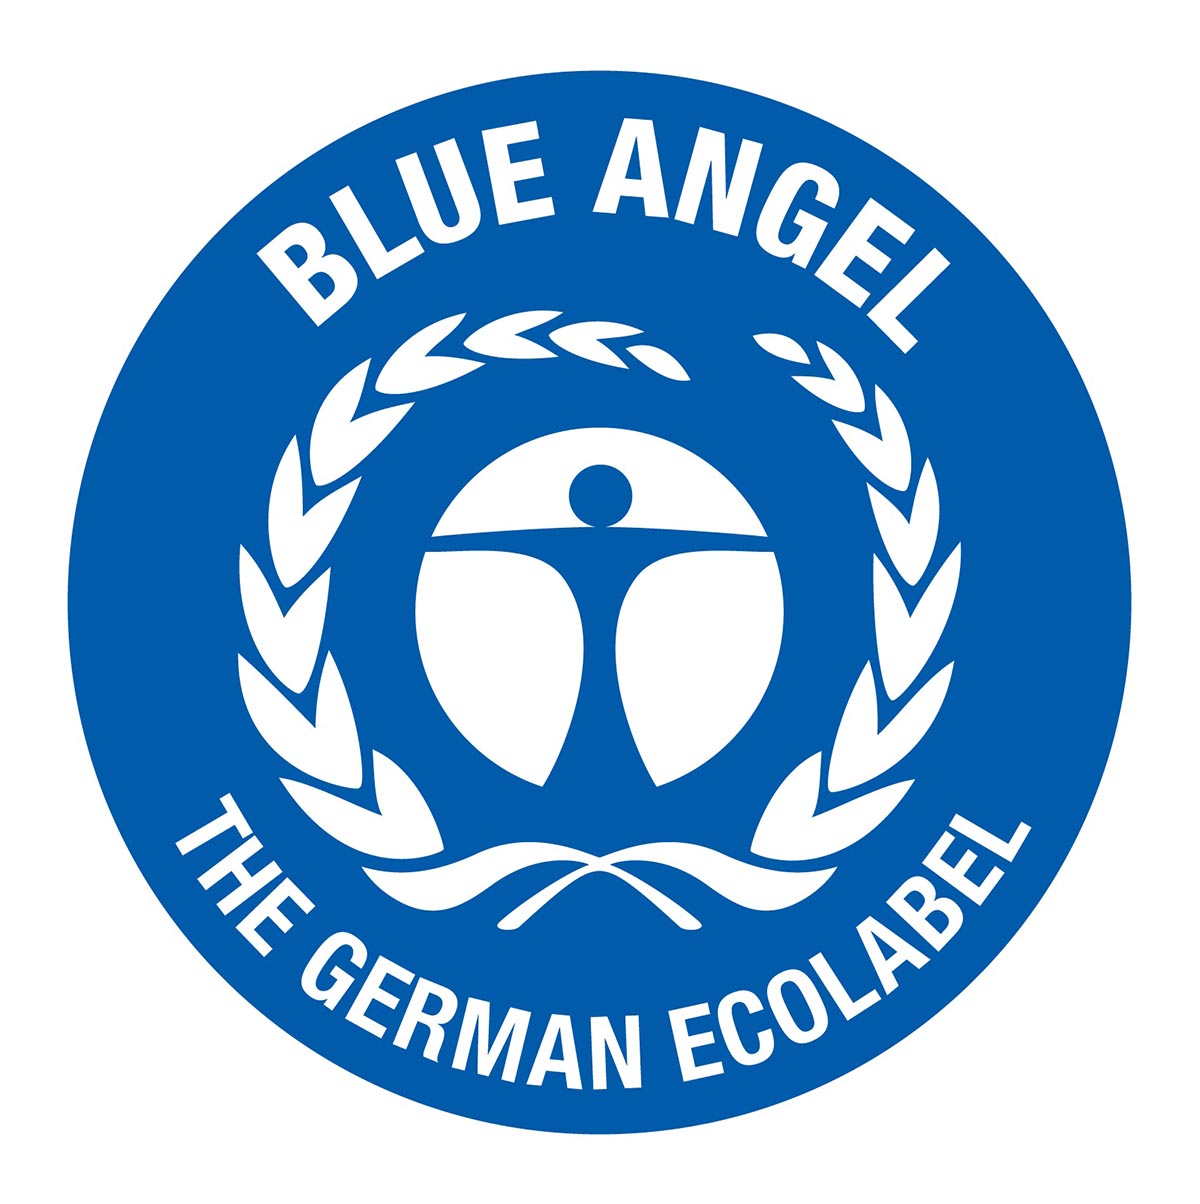 Der Blaue Engel nemšči certifikat za papirnate brisače in toaletni papir